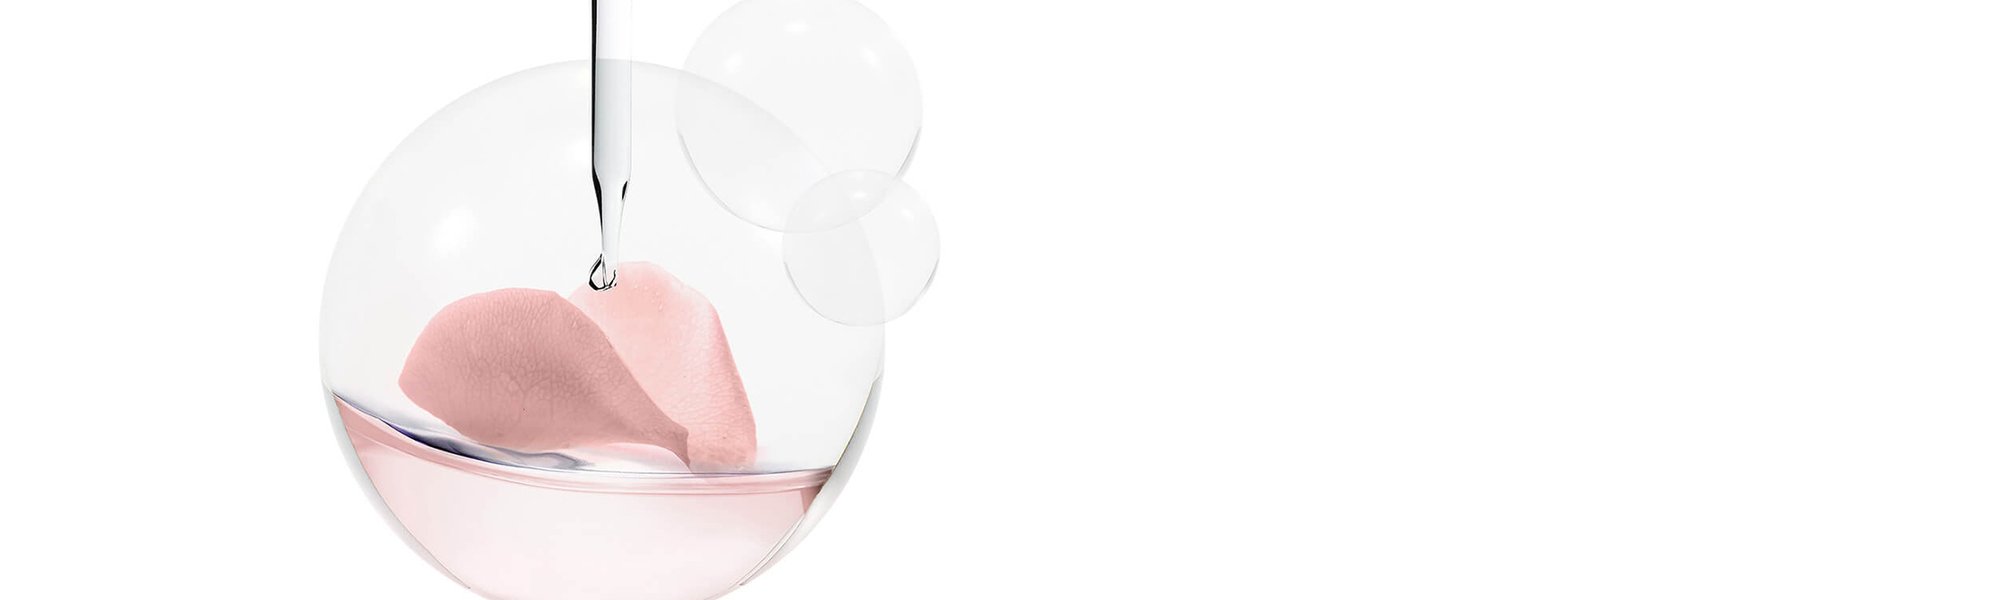 Bildhafte Darstellung einer Petrischale mit rosa Flüssigkeit und Geranien-Blüte